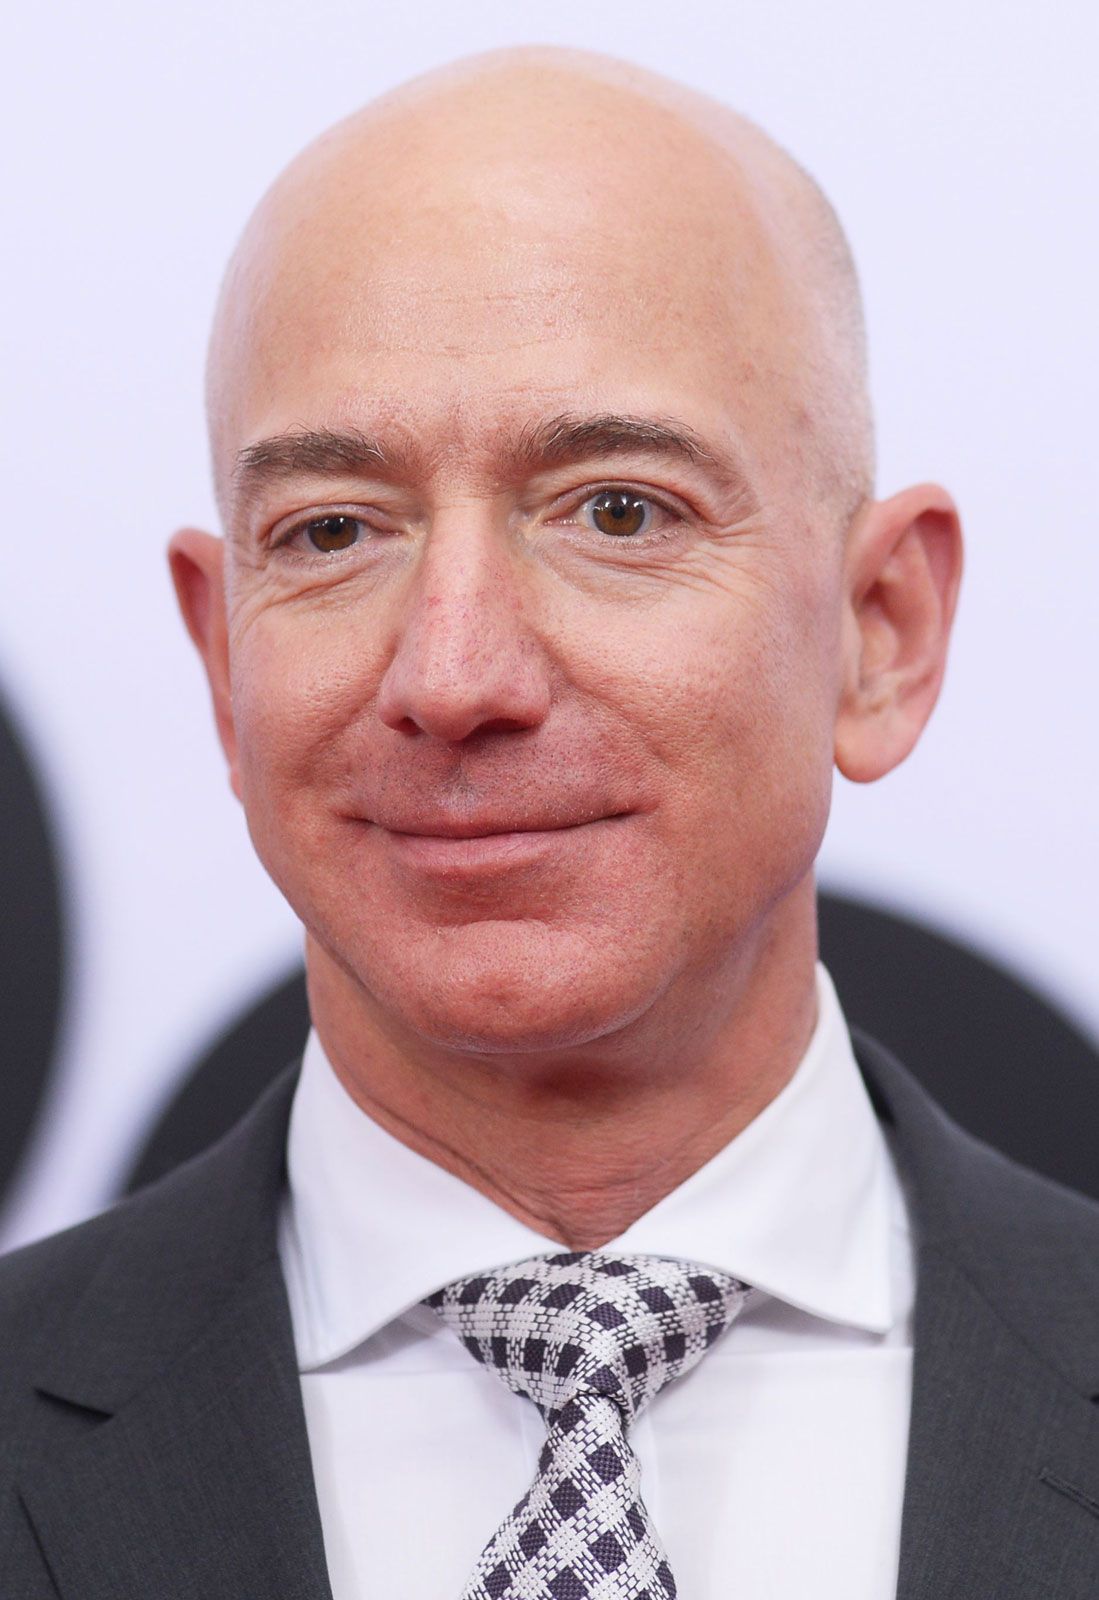 Jeff Bezos Biography Amazon Facts